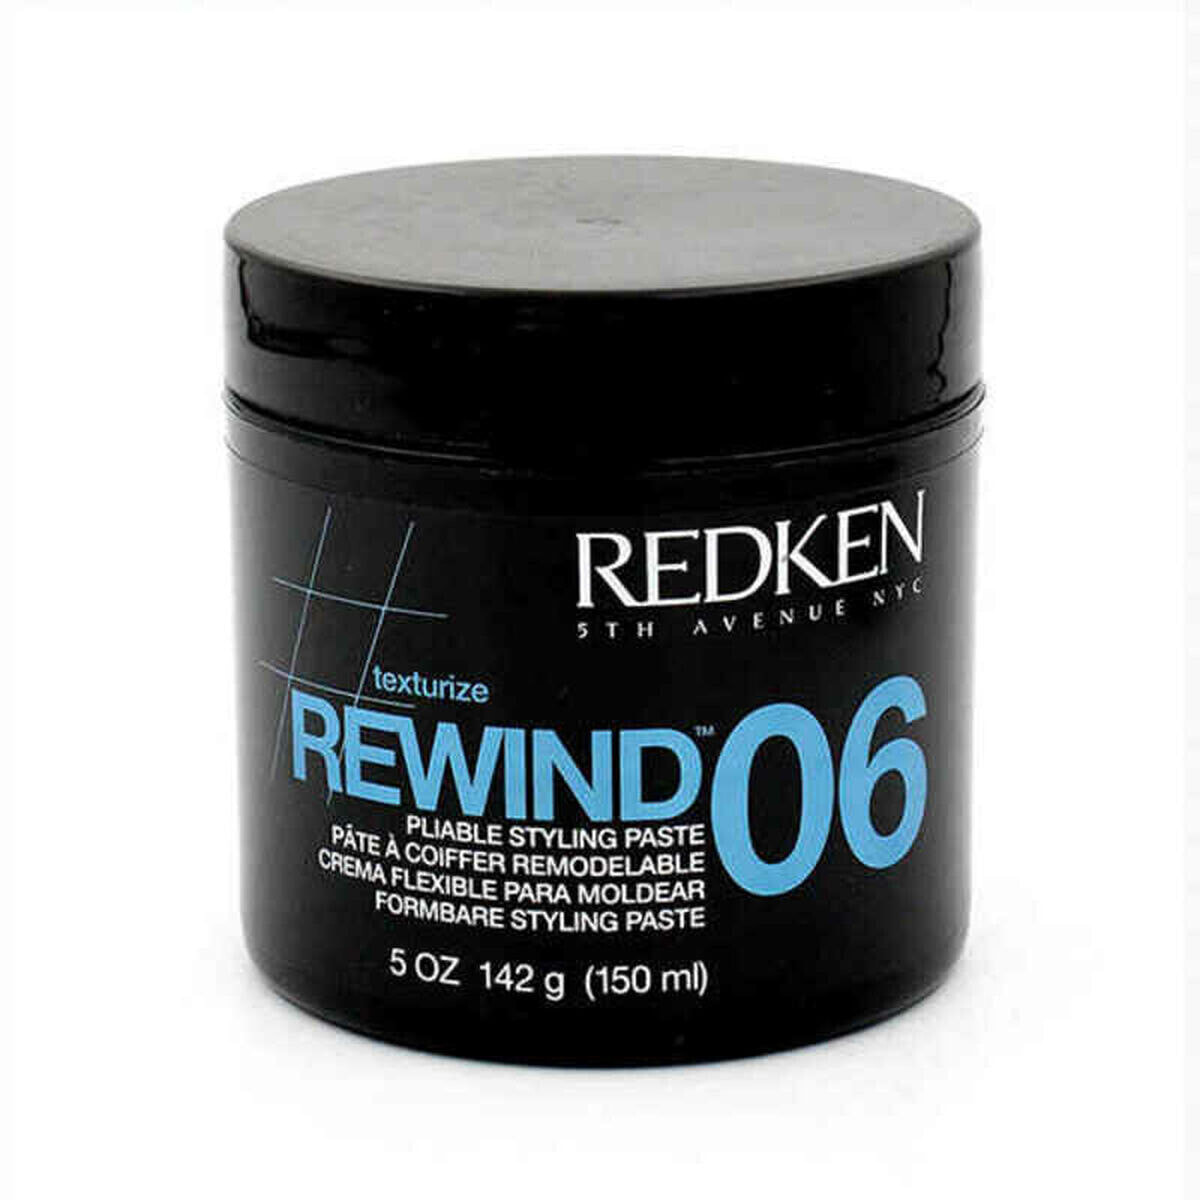 Moulding Wax Rewind 06 Redken Texturize Rewind (150 ml)